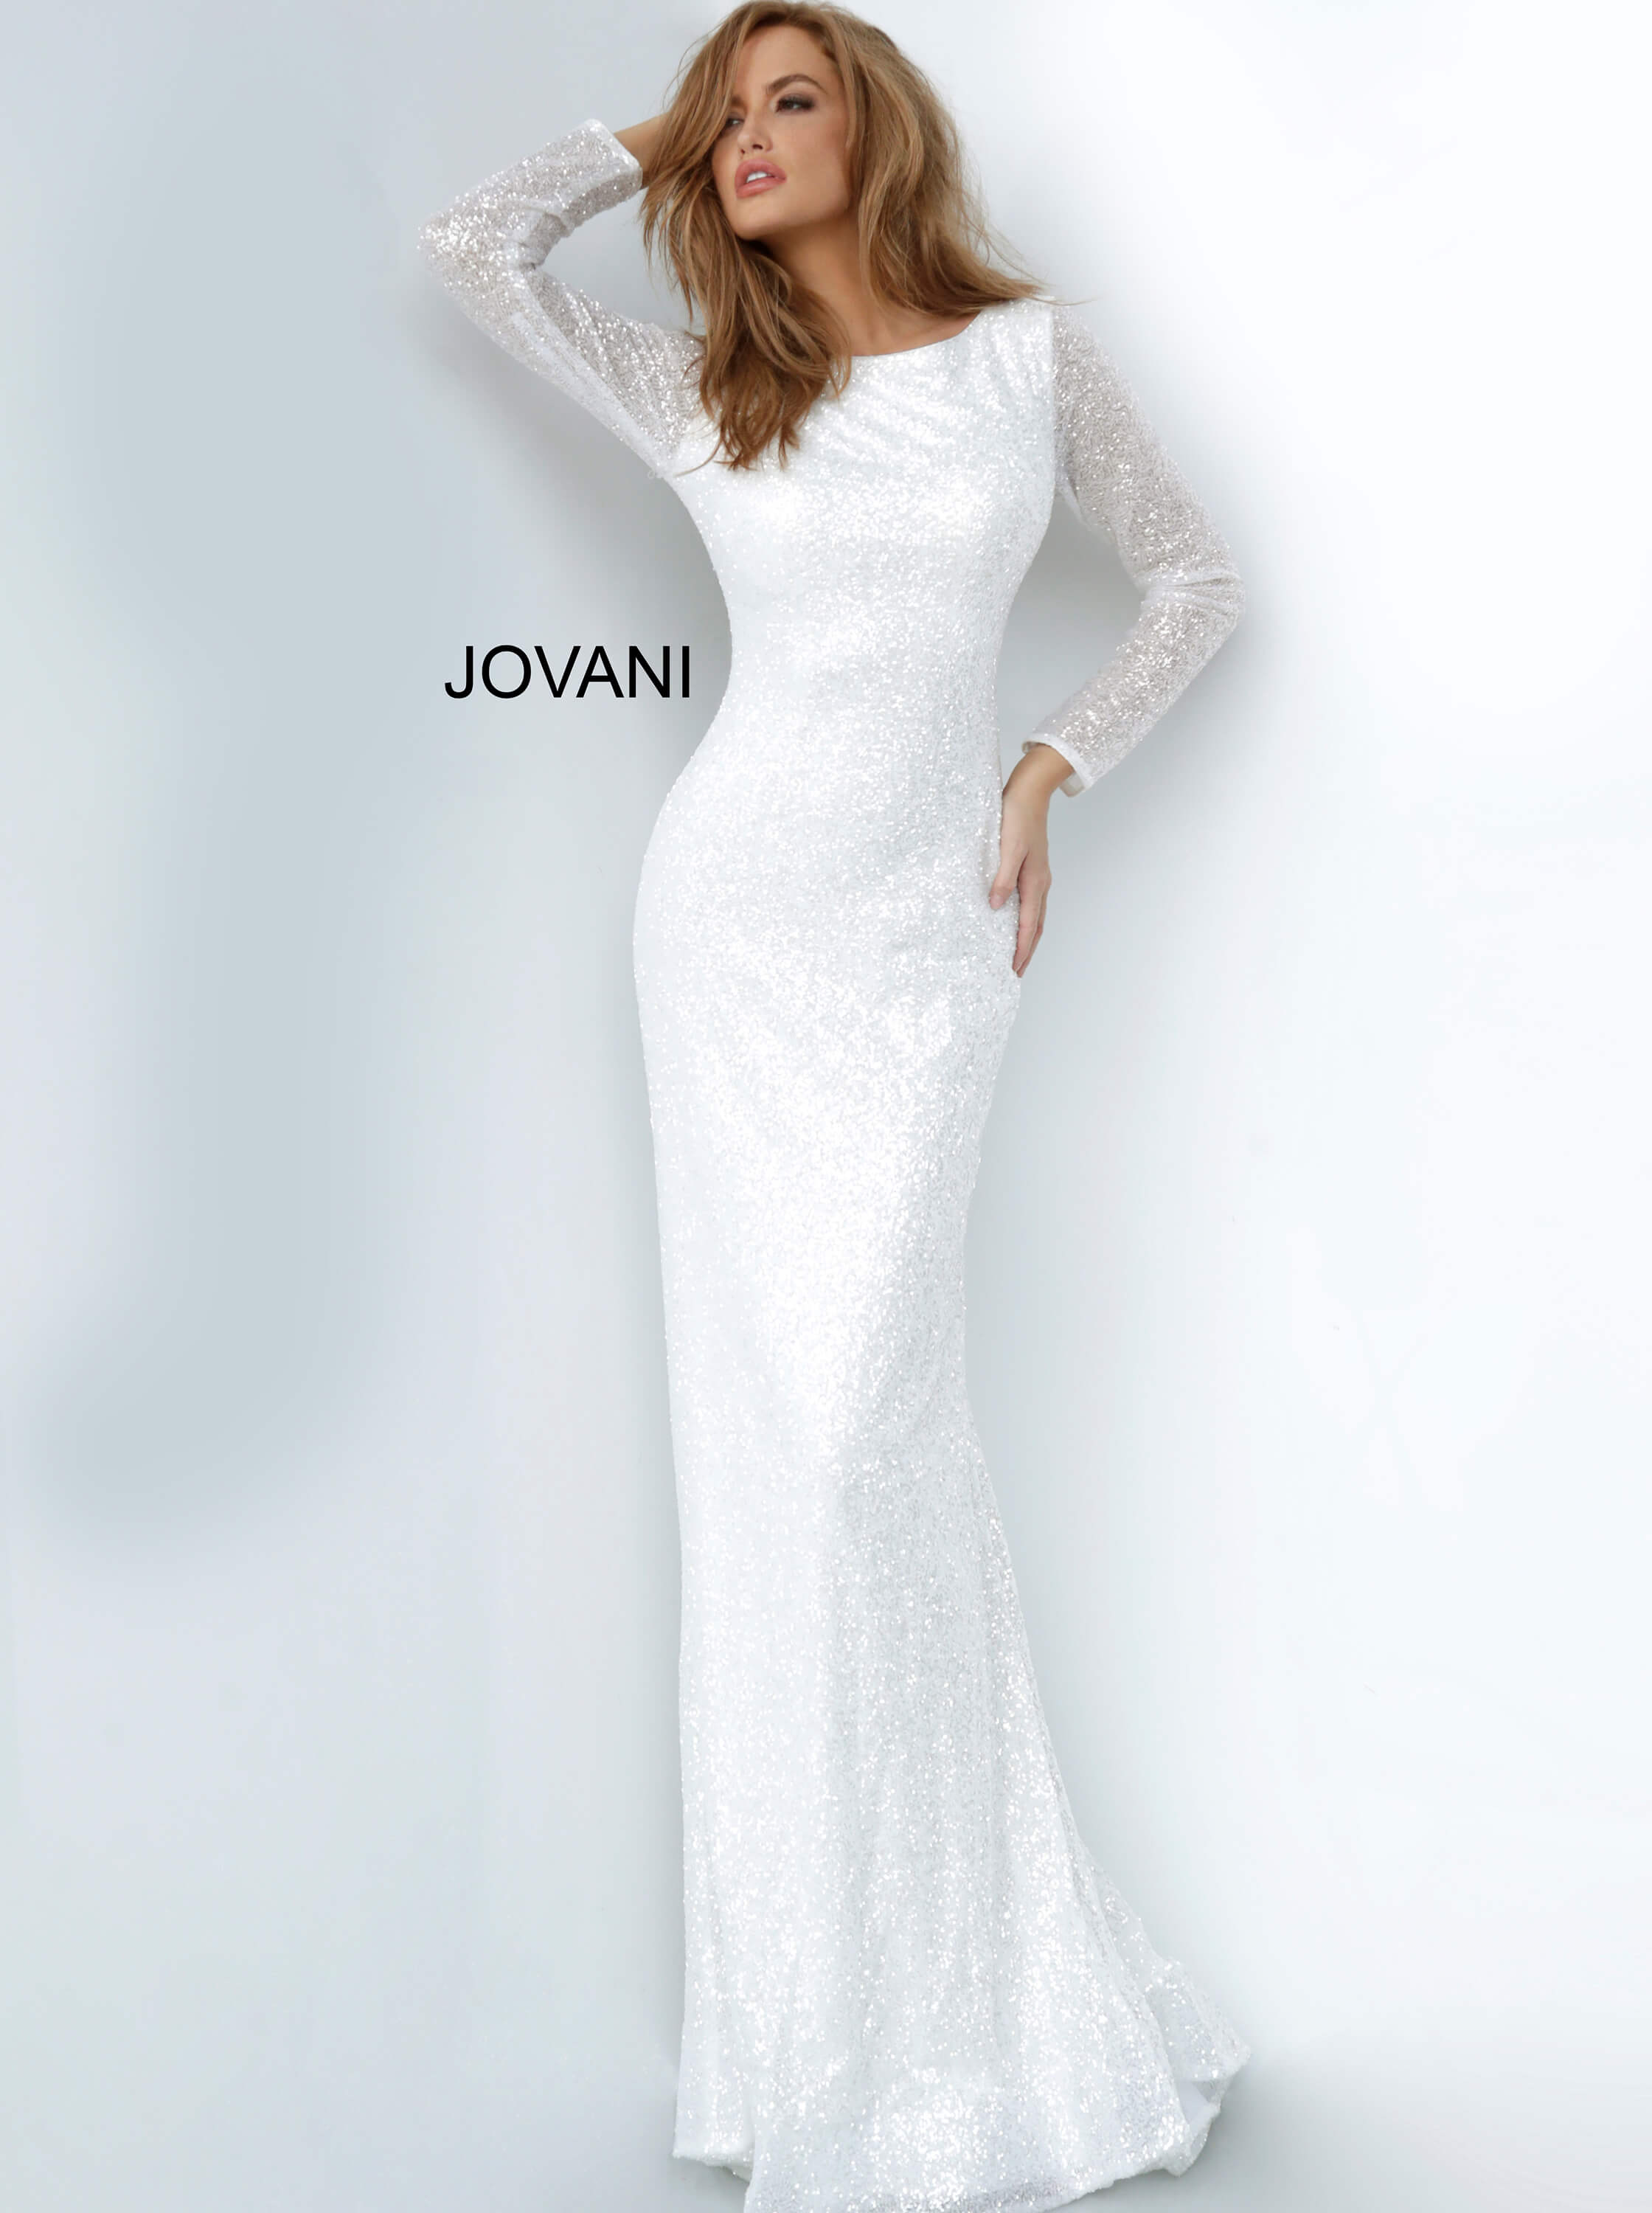 white long dress